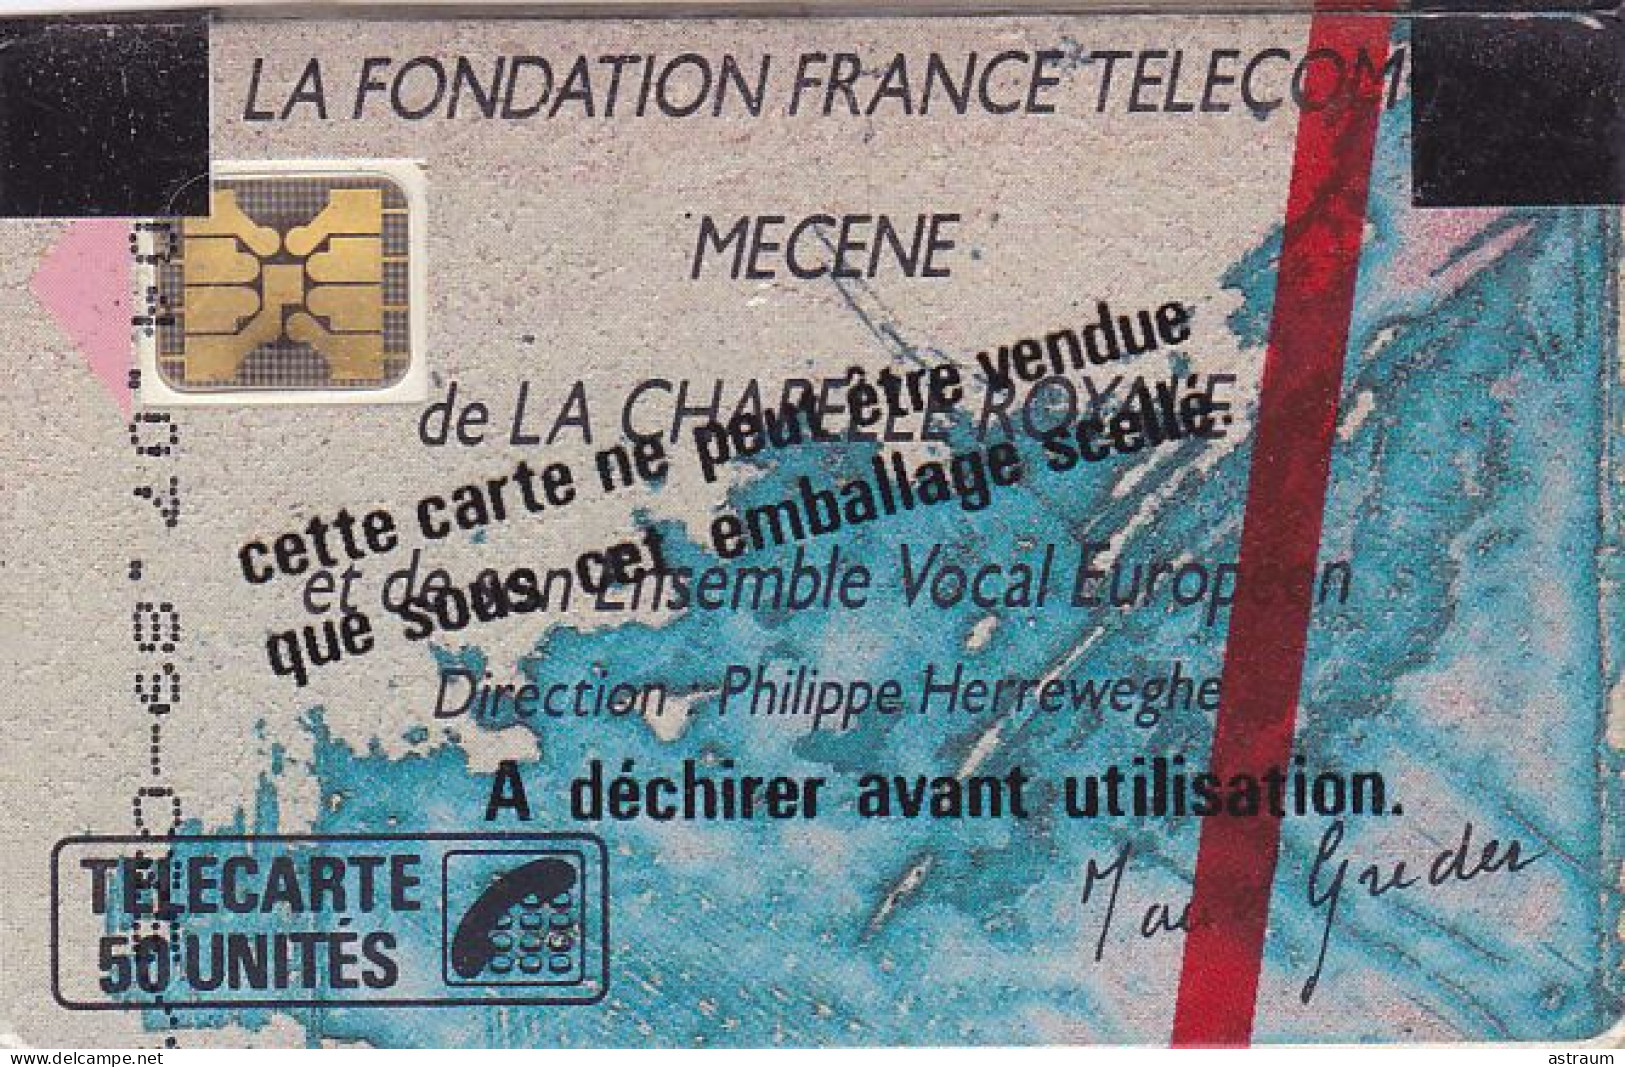 Telecarte Publique F77 NSB -  Chapelle Royale 3 - 50 U - Sc4 - 1989 - 1989